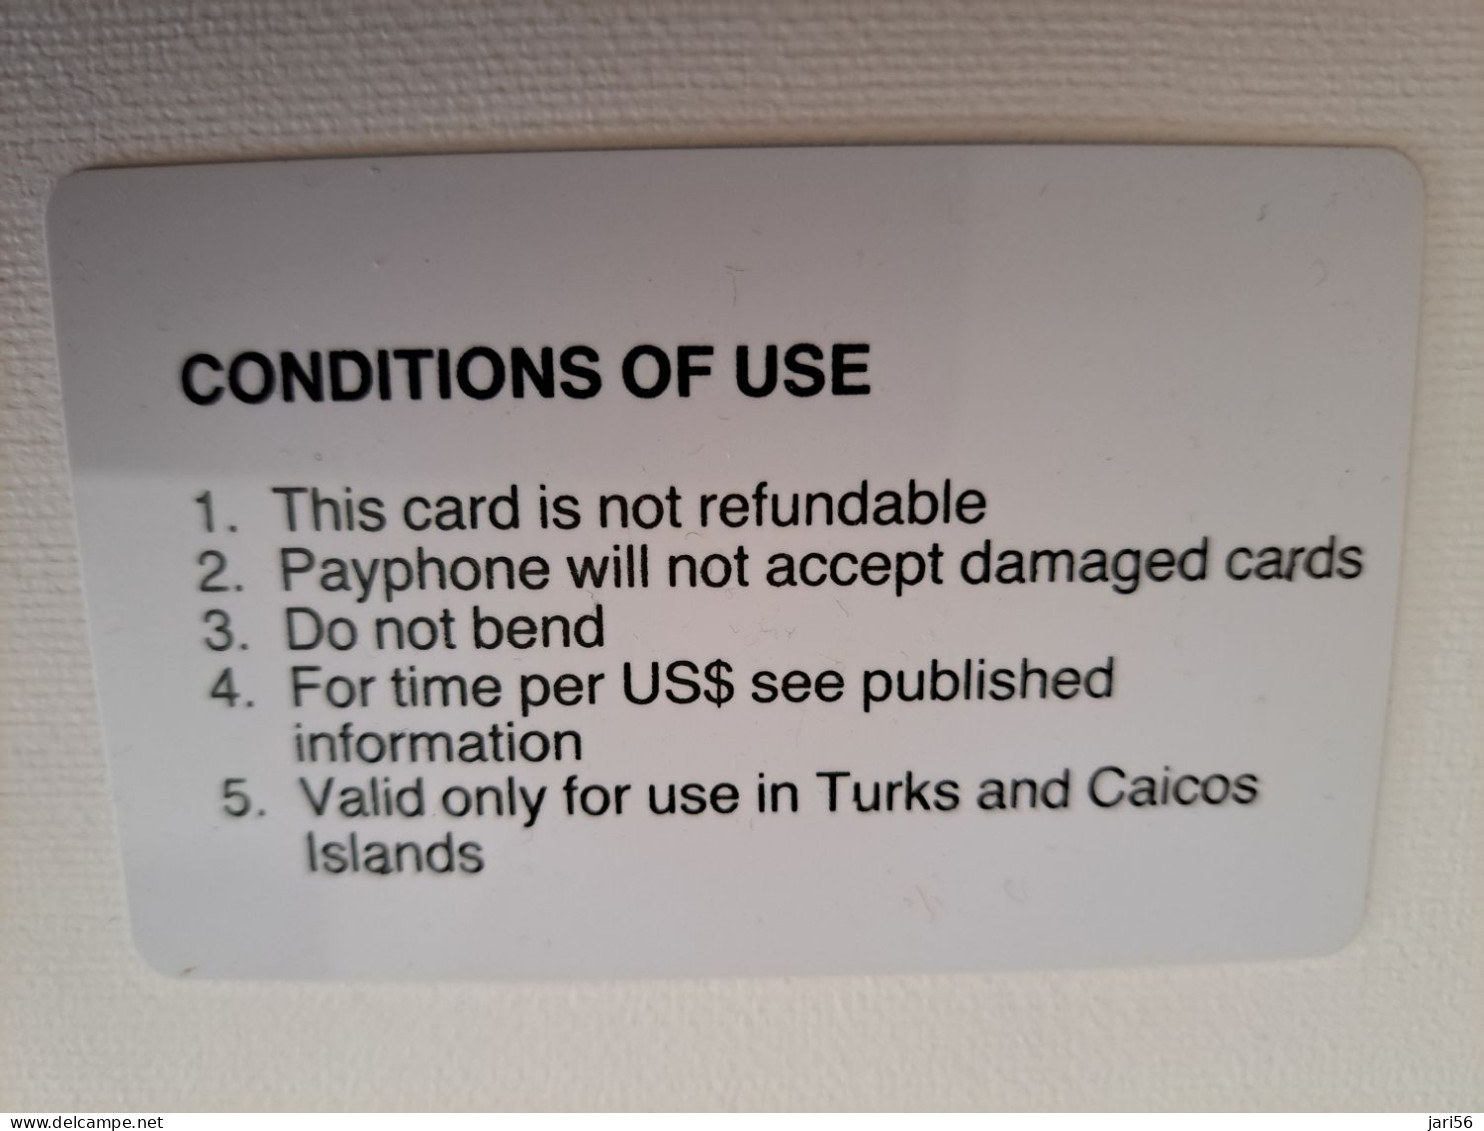 TURKS & CAICOS ISLANDS $ 20,-  AUTELCA CARDS 1E ISSUE  Prepaid      Fine Used Card  **13473** - Turcas Y Caicos (Islas)